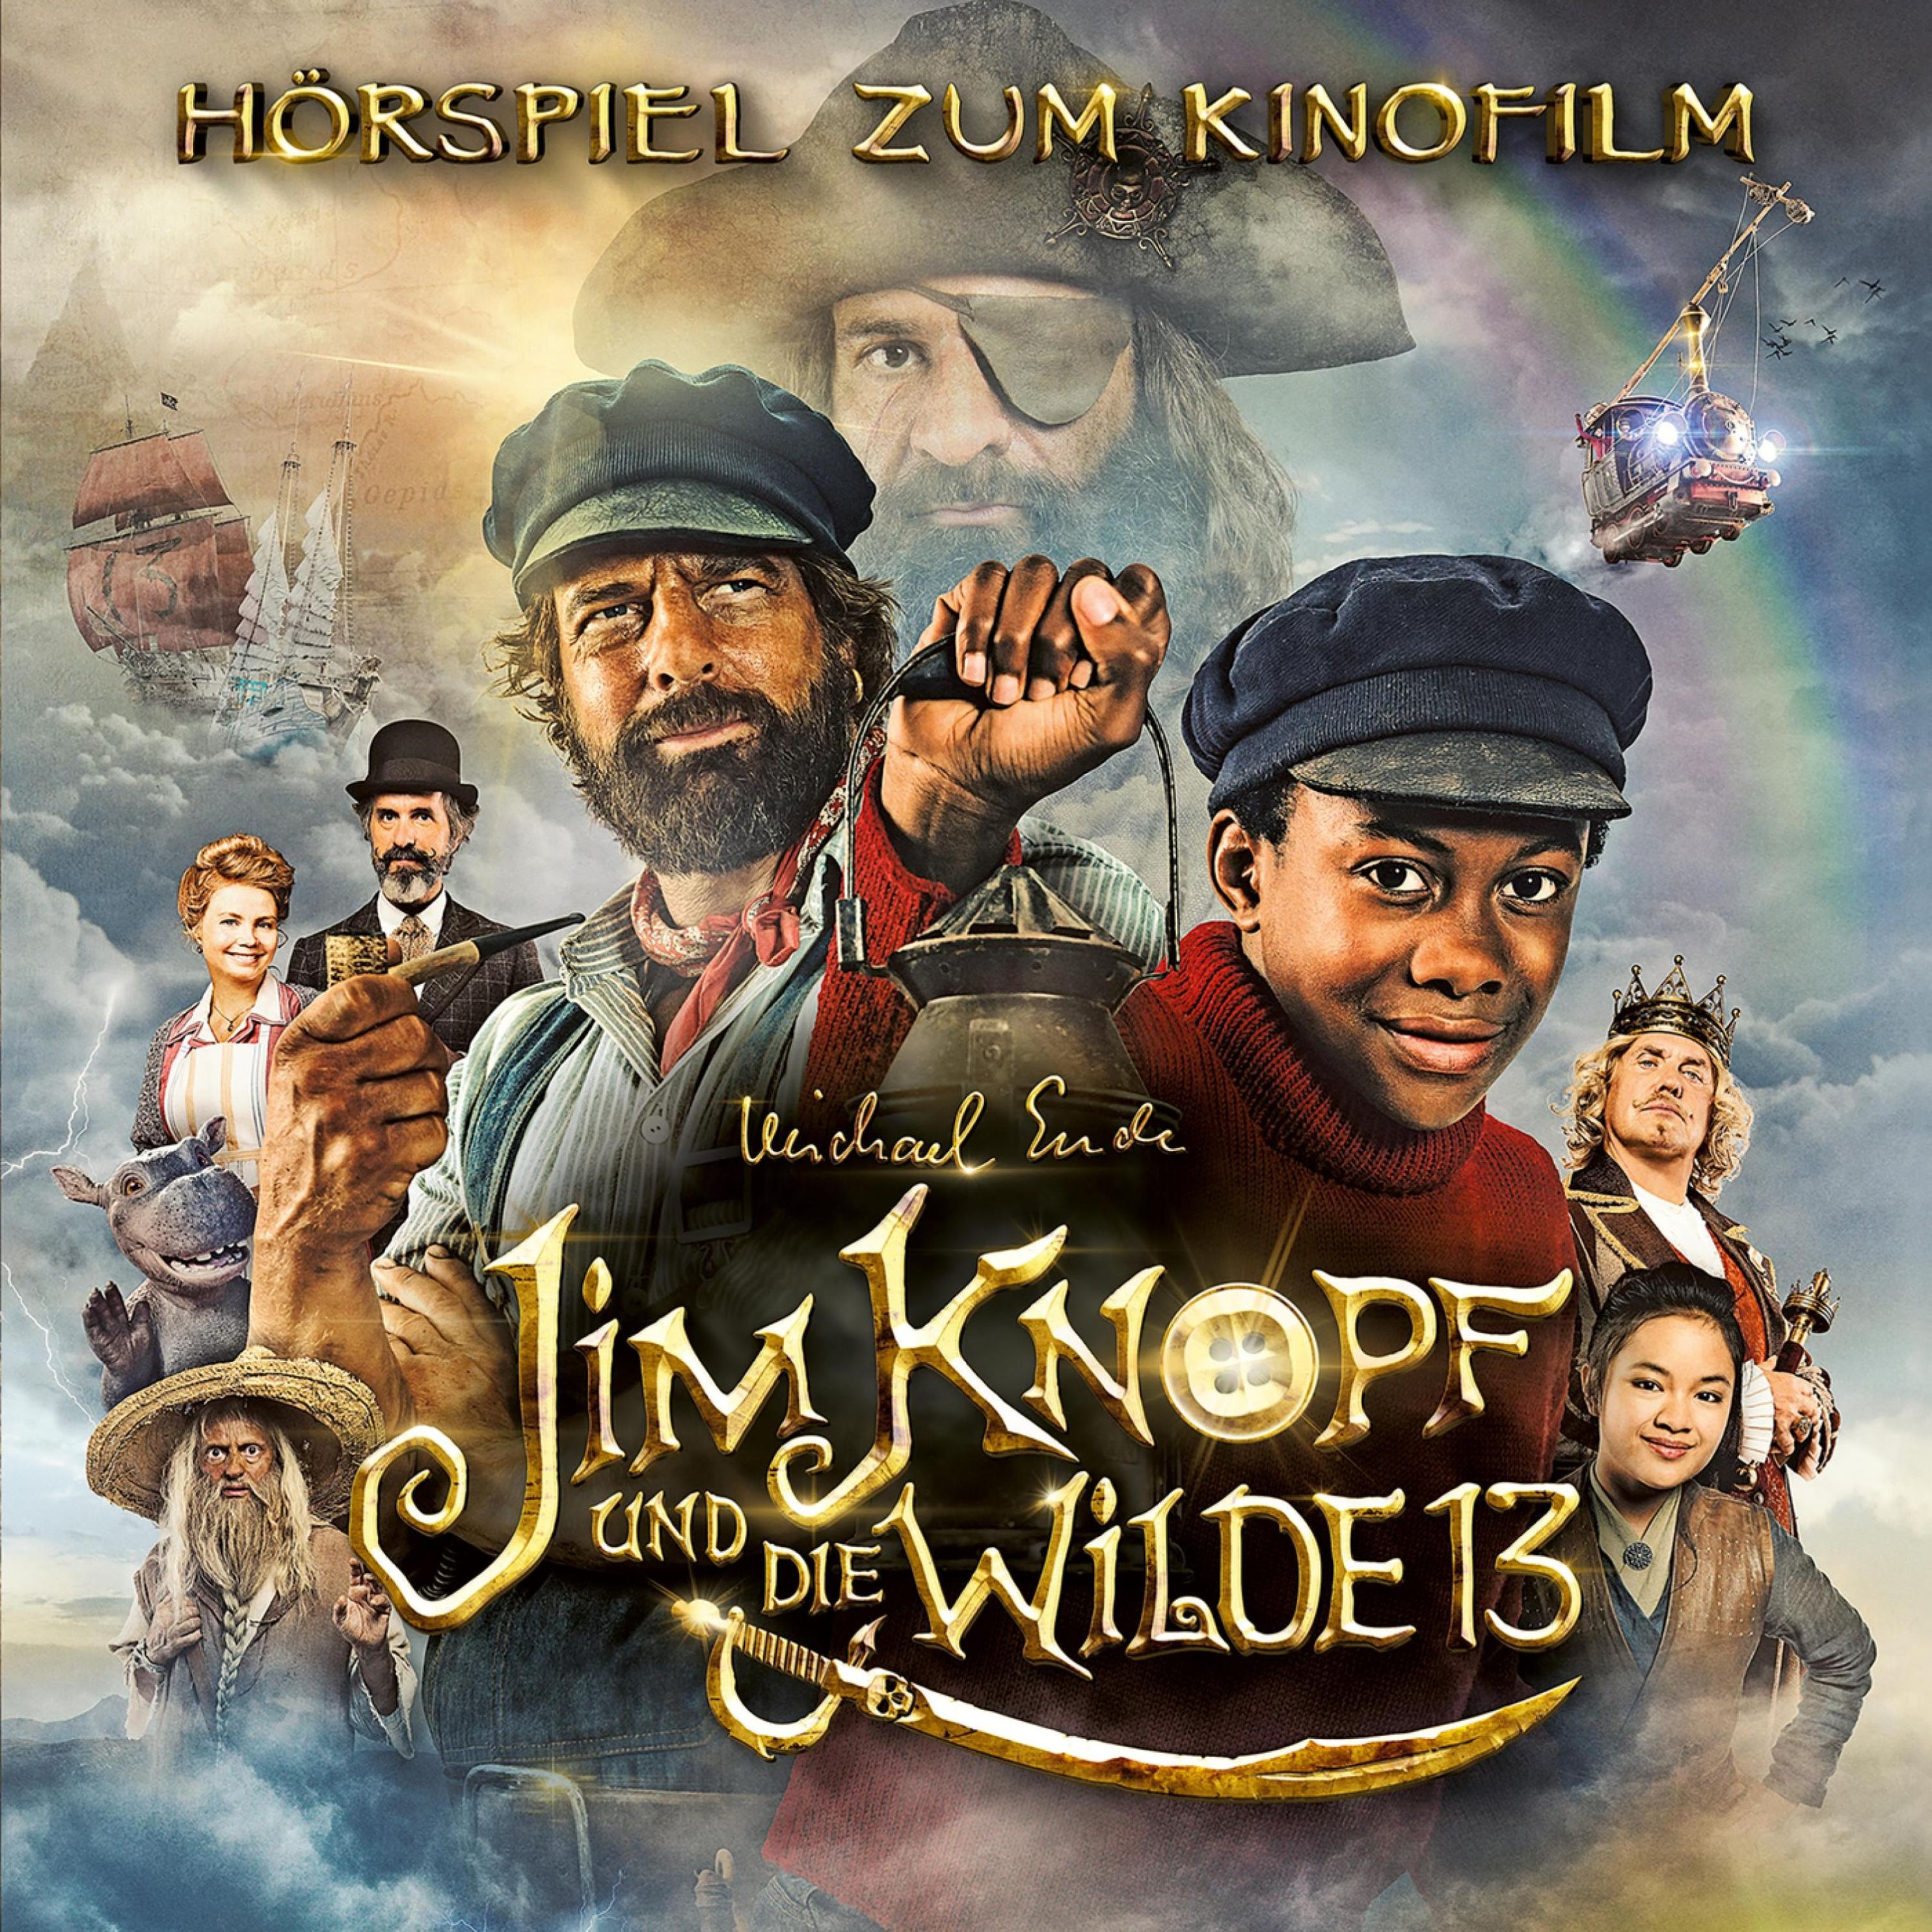 Jim Knopf und Lukas der Lokomotivführer - 2 - Jim Knopf und die Wilde 13  Hörspiel zum Kinofilm Hörbuch Download